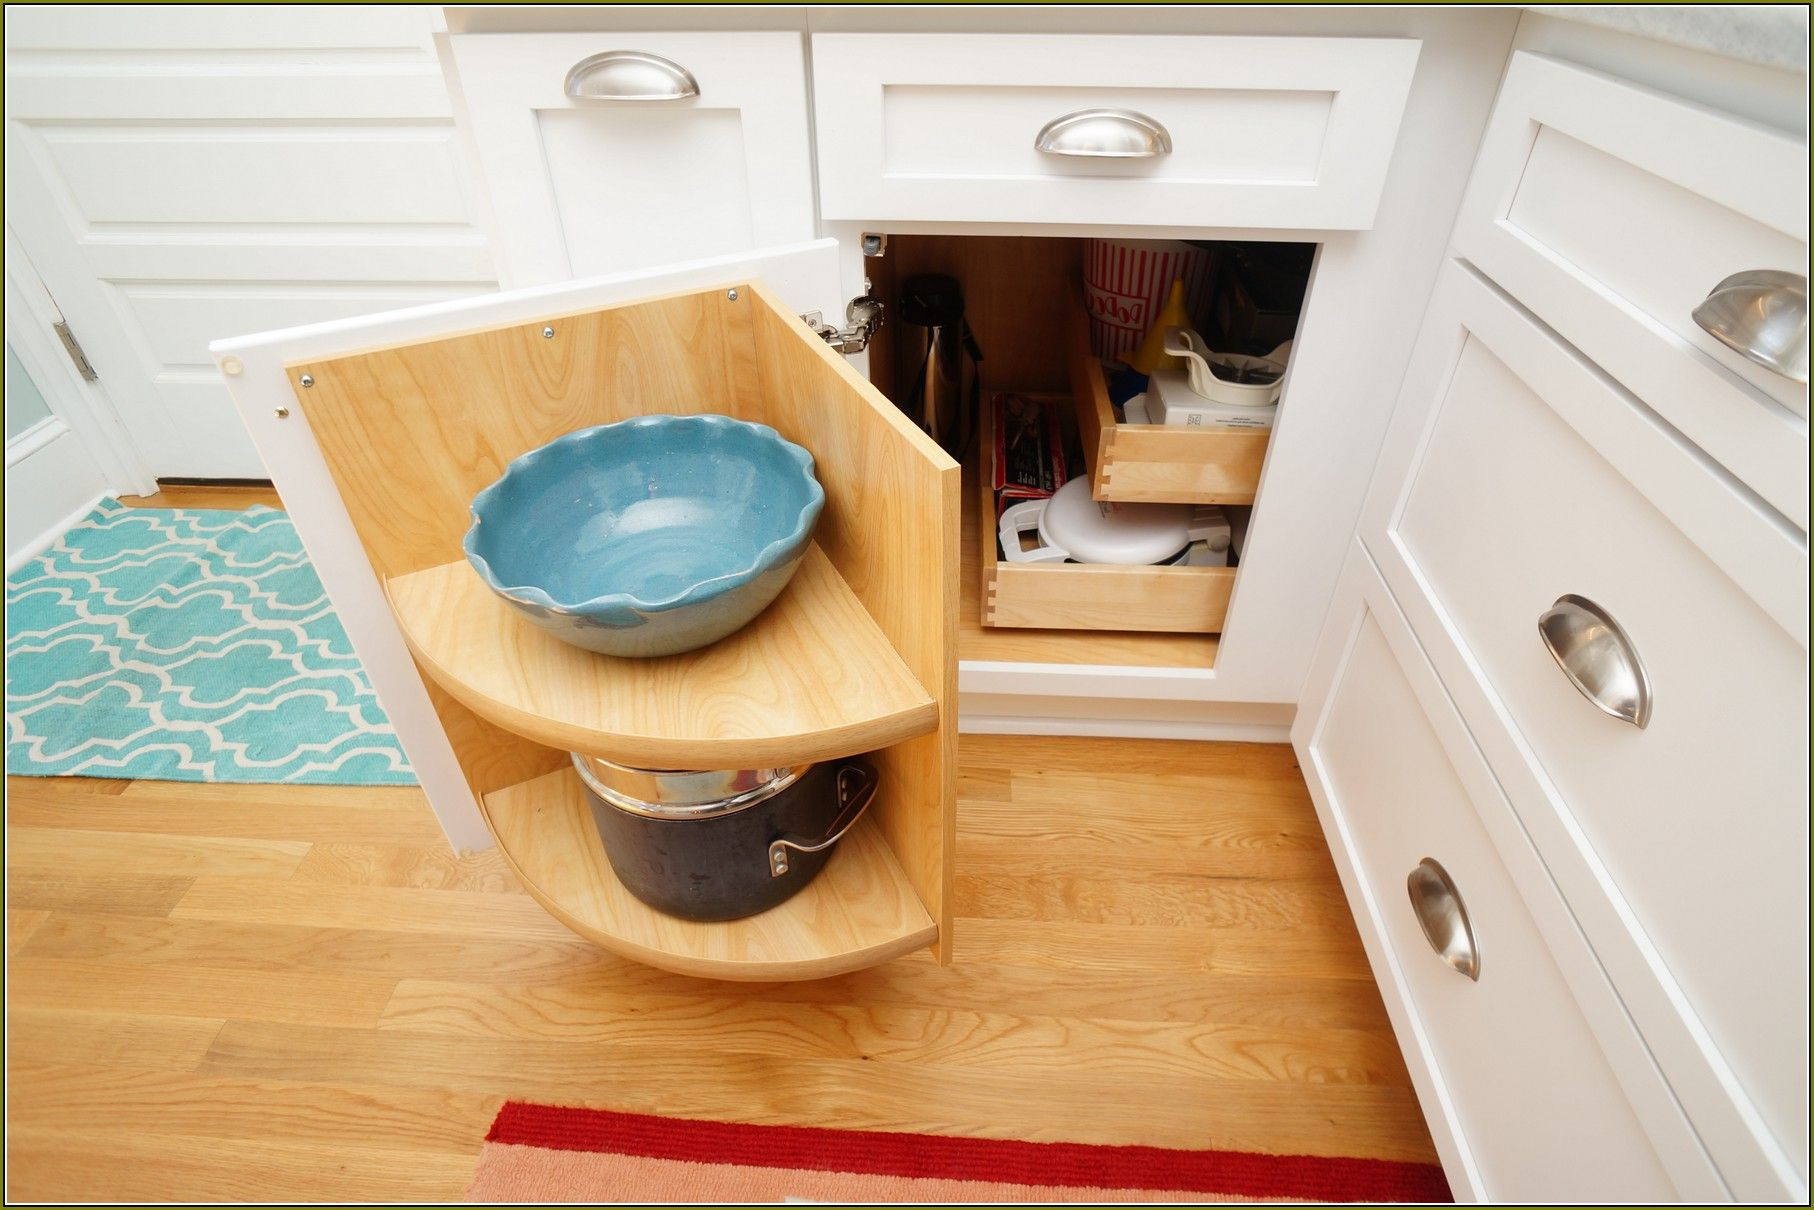 Best ideas about Blind Corner Cabinet Solutions DIY
. Save or Pin Diy Blind Corner Cabinet Organizer Kitchen Now.